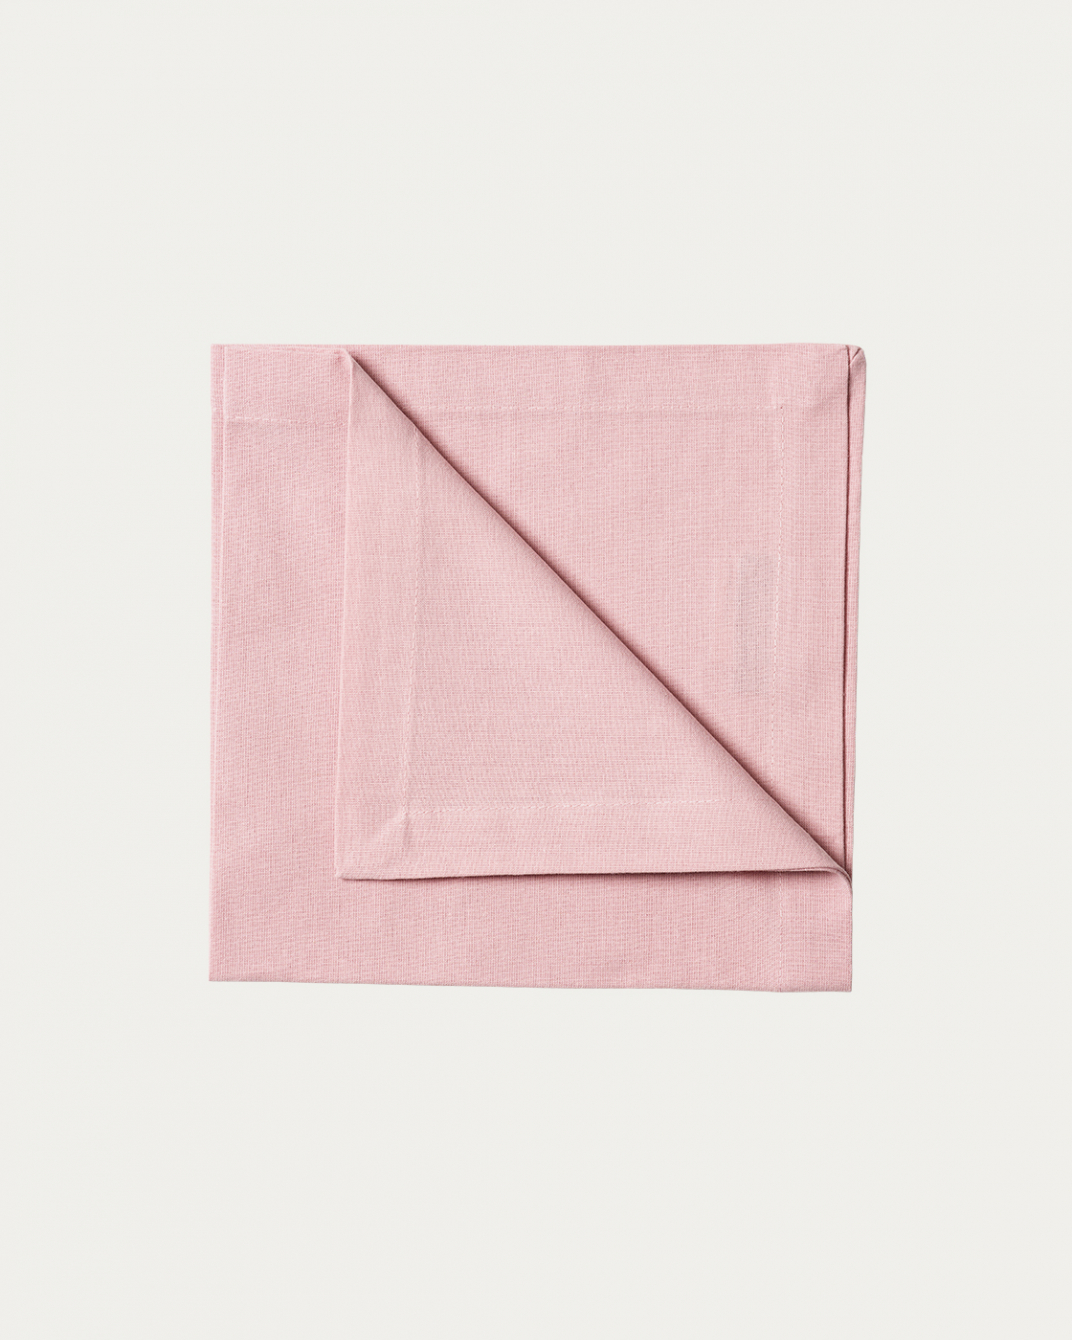 Image du produit serviette de table ROBERT rose poudré en coton doux de LINUM DESIGN. Taille 45 x 45 cm et vendu en lot de 4.